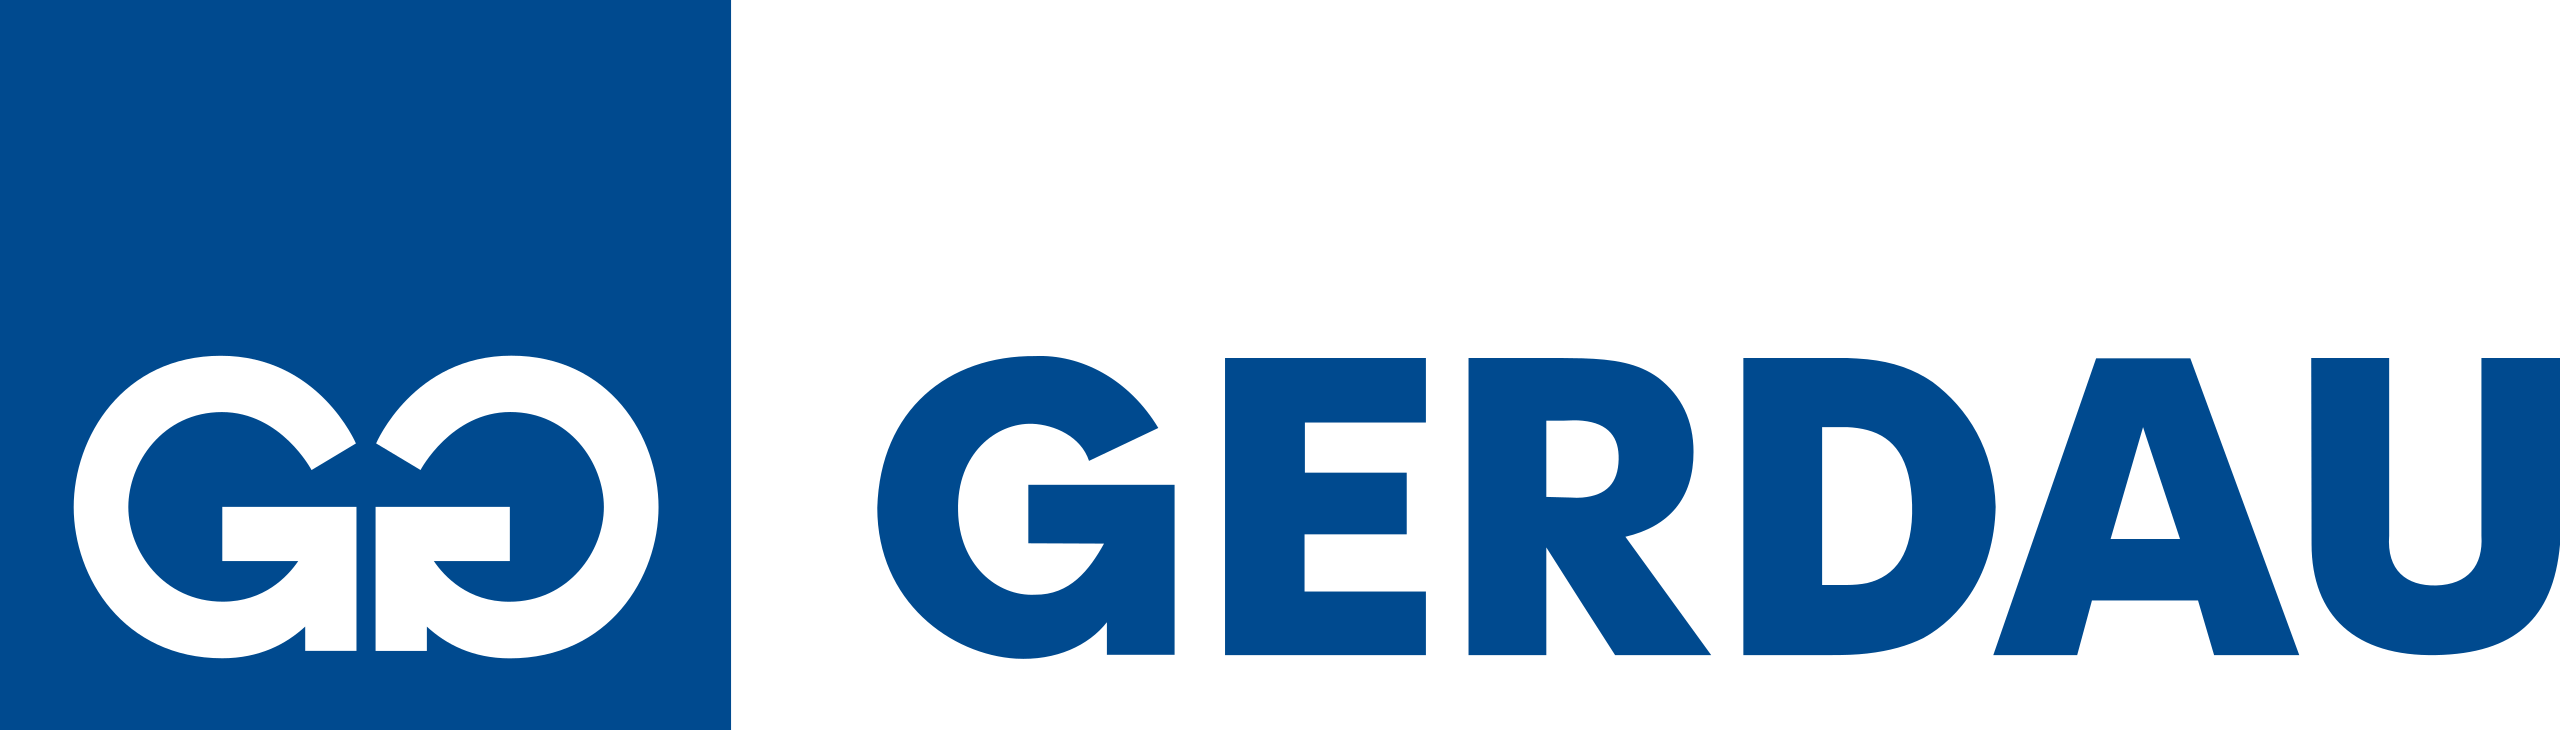 Gerdau_logo_(2011).svg